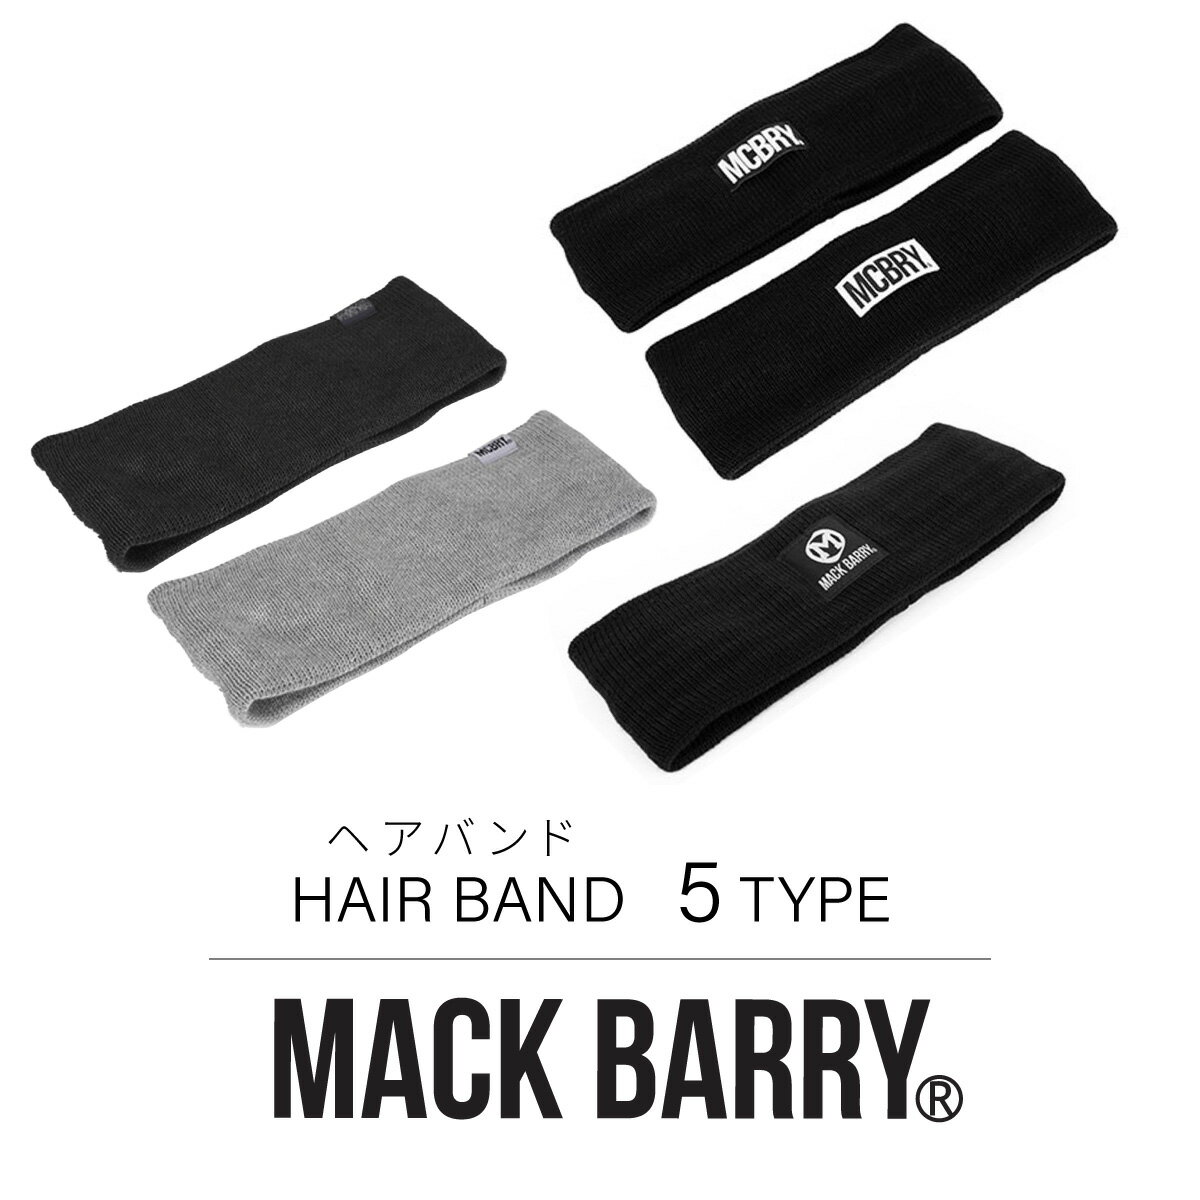 BTS着用で話題 MACK BARRY 国内正規品 ヘアバンド ヘアアクセサリー HAIR BAND メンズ レディース 韓国 K-POP ファッション シンプル おしゃれ ブラック プレゼント マクバリー 海外ブランド 黒 白 グレー mack barry